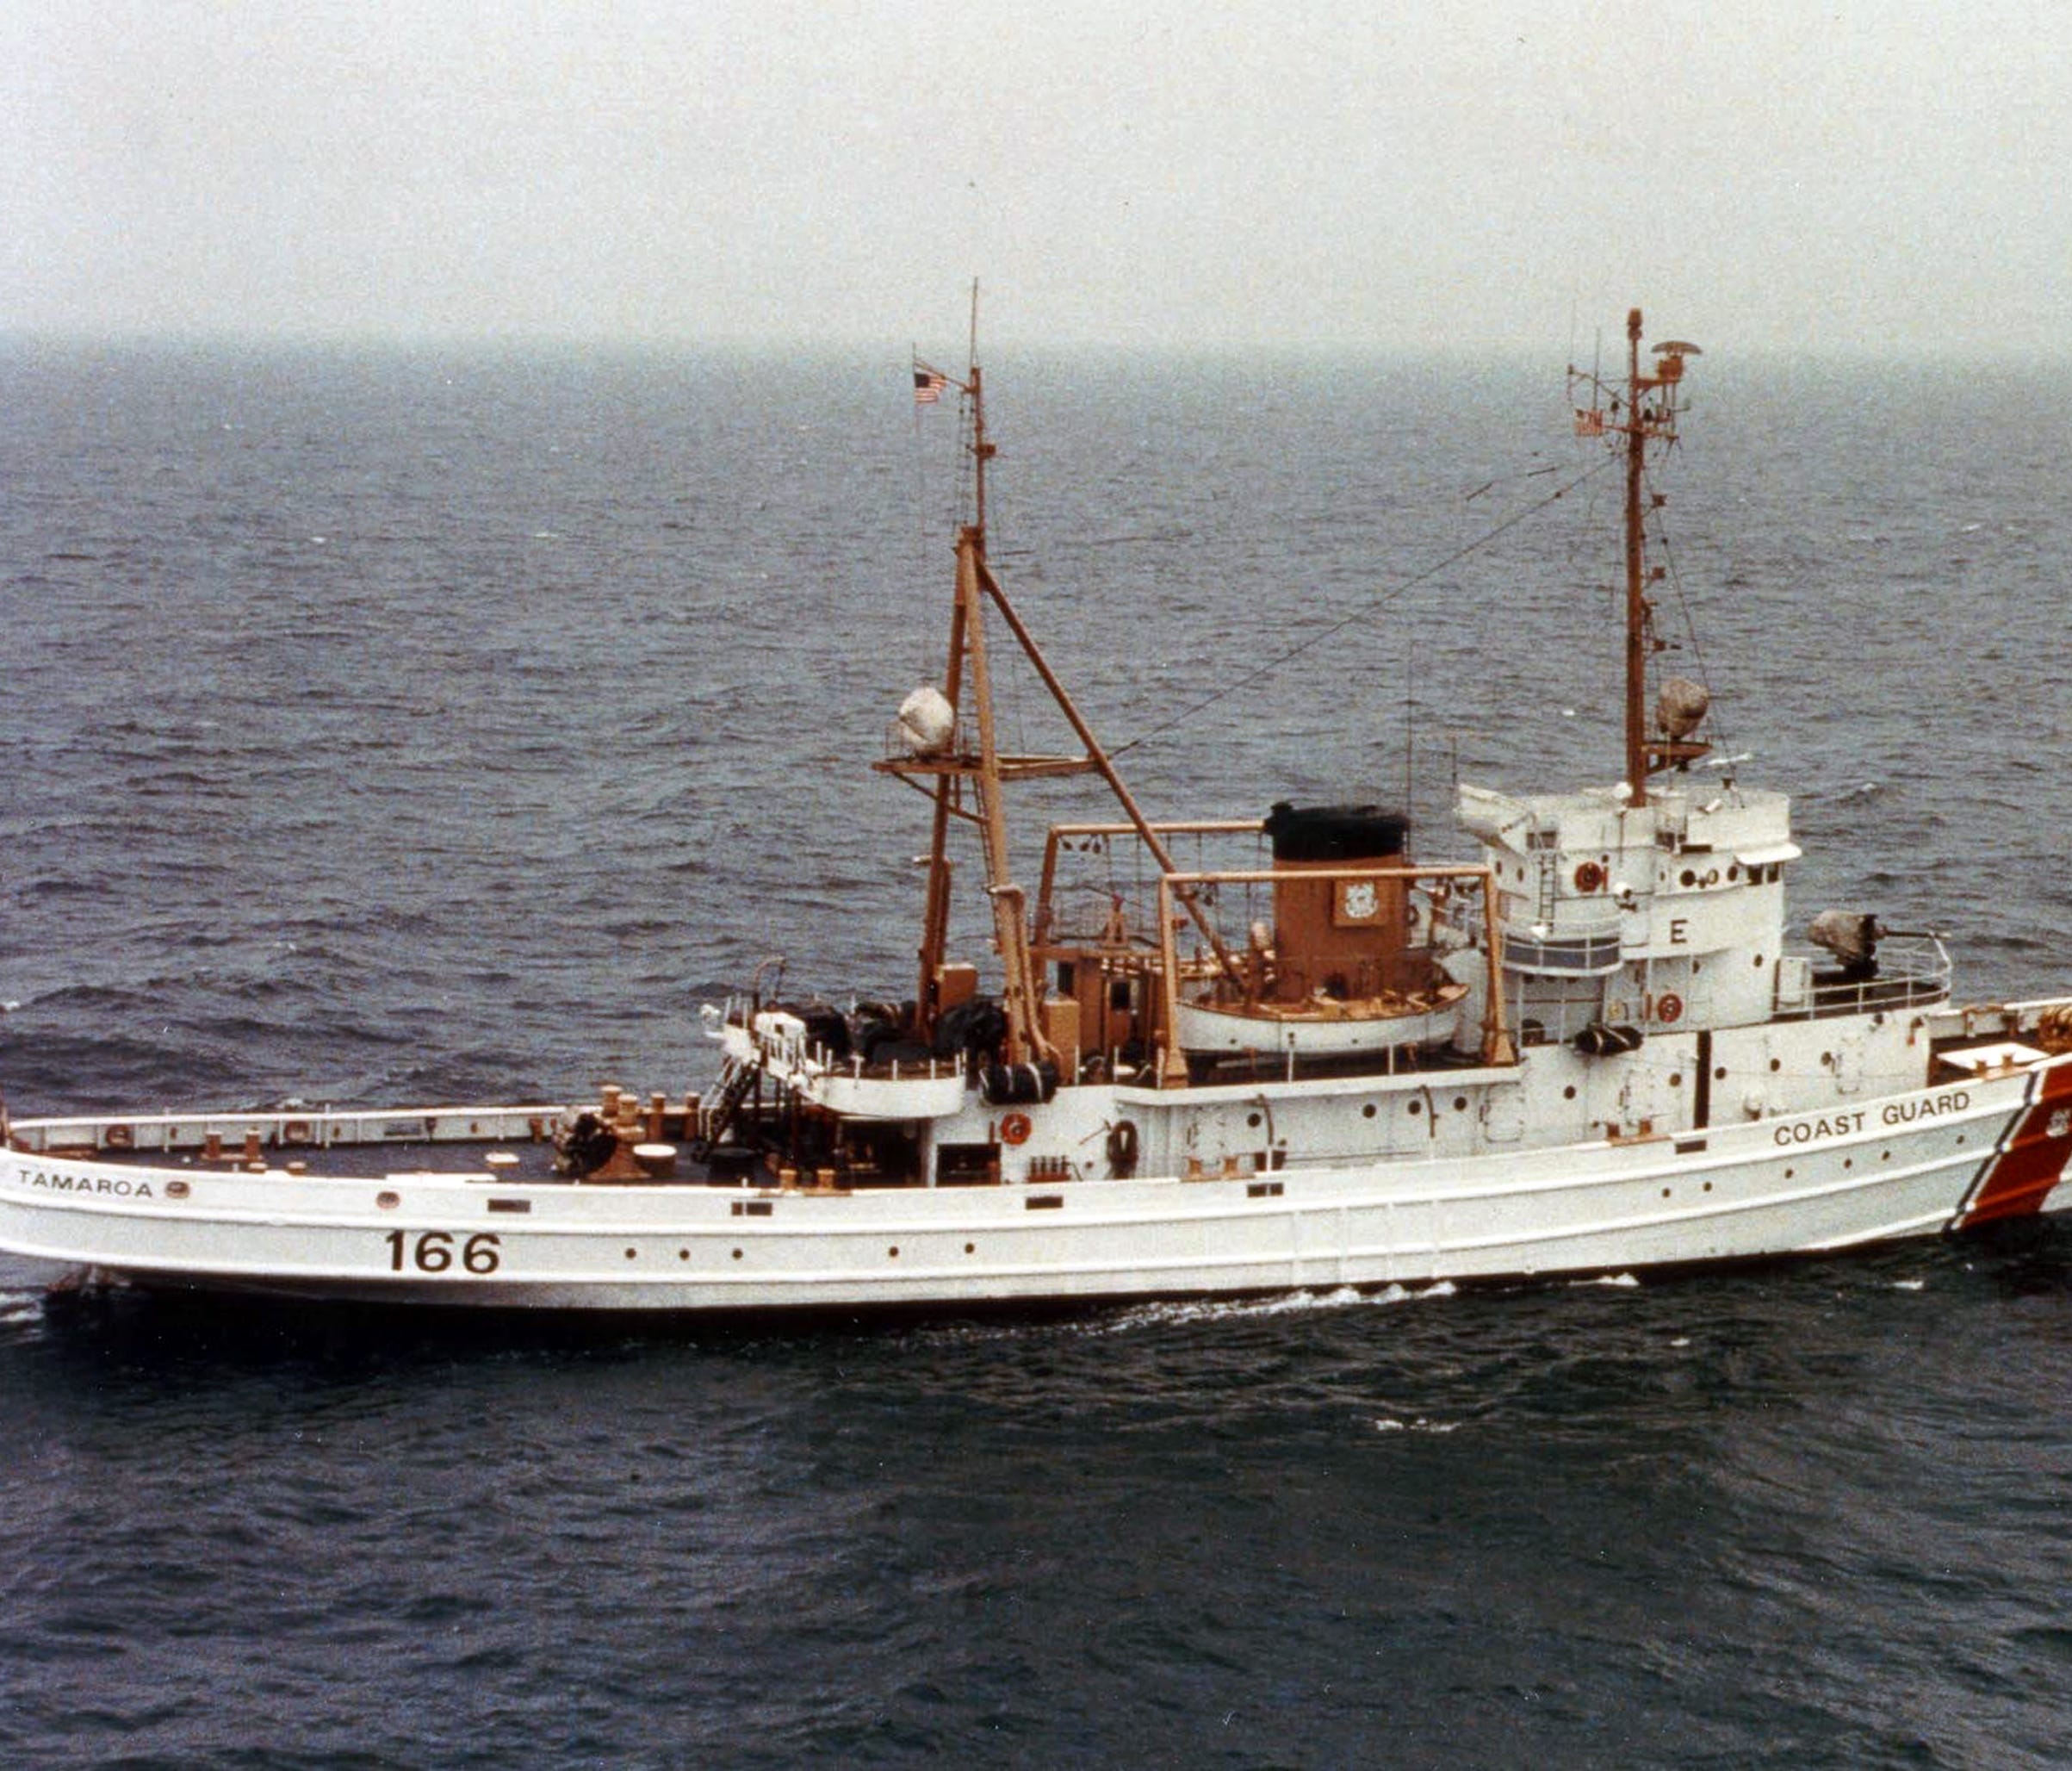 Circa 1989. Coast Guard Cutter Tamaroa in an undated photo.